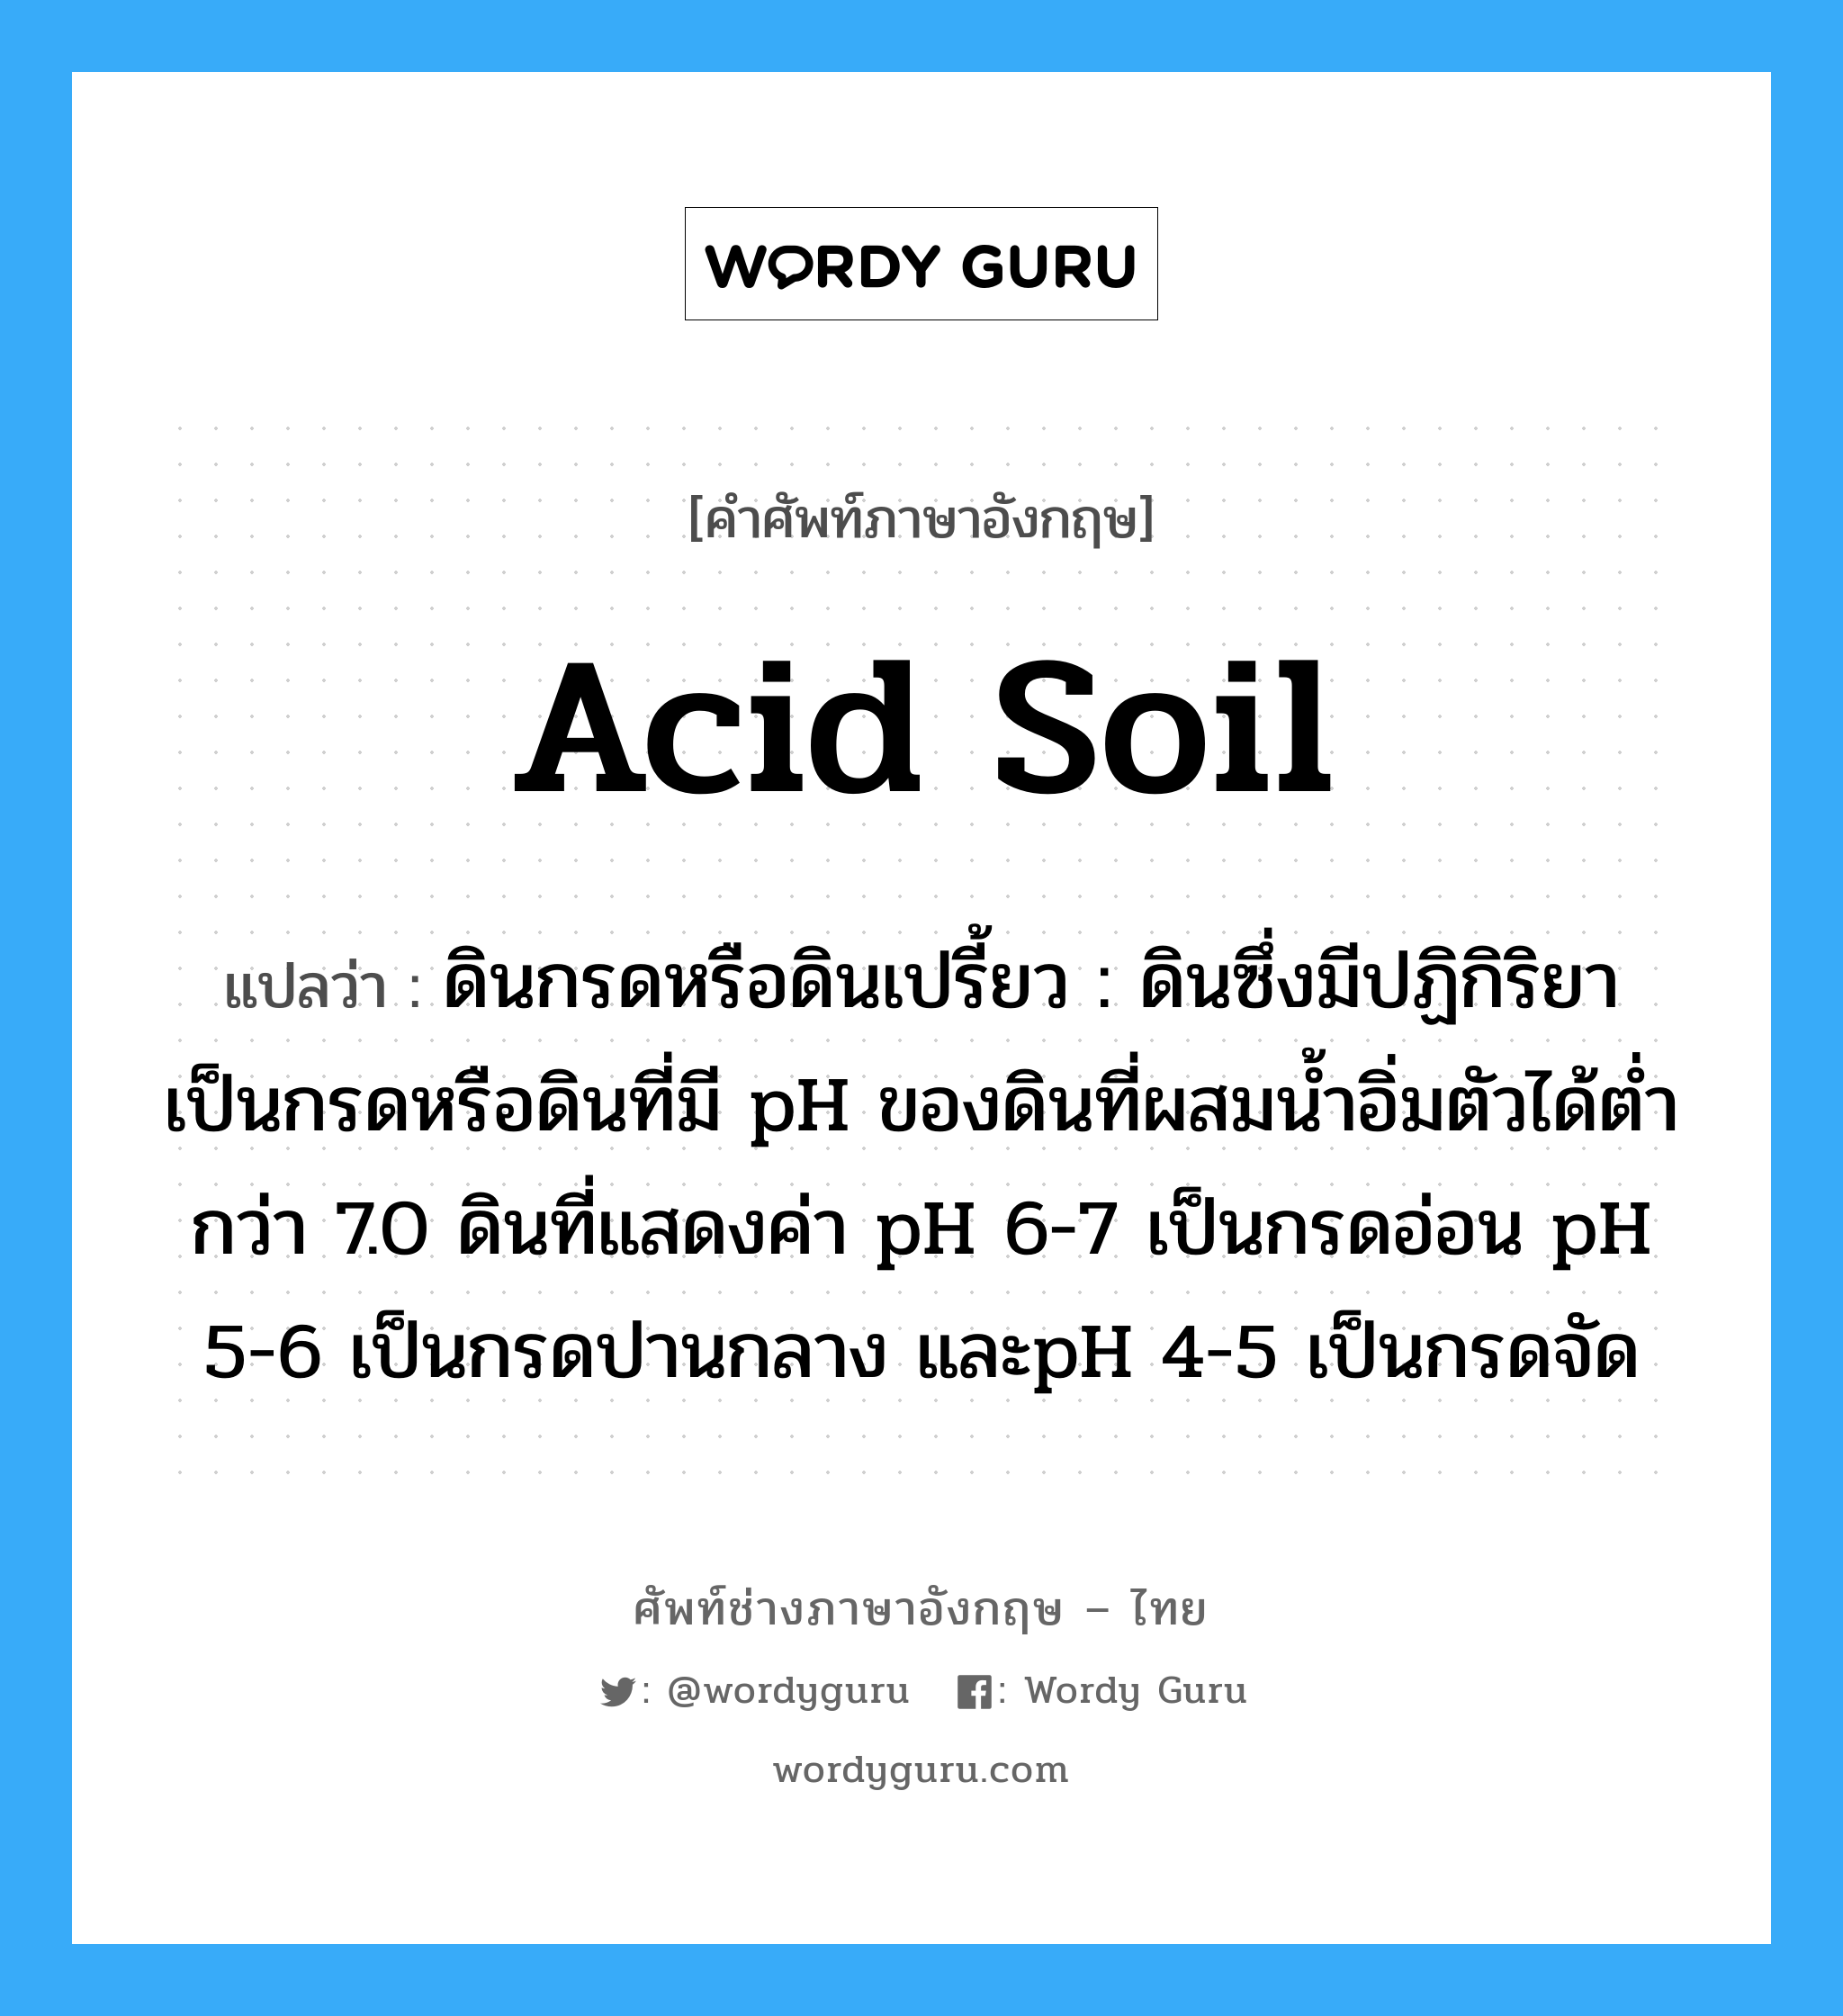 acid soil แปลว่า?, คำศัพท์ช่างภาษาอังกฤษ - ไทย acid soil คำศัพท์ภาษาอังกฤษ acid soil แปลว่า ดินกรดหรือดินเปรี้ยว : ดินซึ่งมีปฏิกิริยาเป็นกรดหรือดินที่มี pH ของดินที่ผสมน้ำอิ่มตัวได้ต่ำกว่า 7.0 ดินที่แสดงค่า pH 6-7 เป็นกรดอ่อน pH 5-6 เป็นกรดปานกลาง และpH 4-5 เป็นกรดจัด